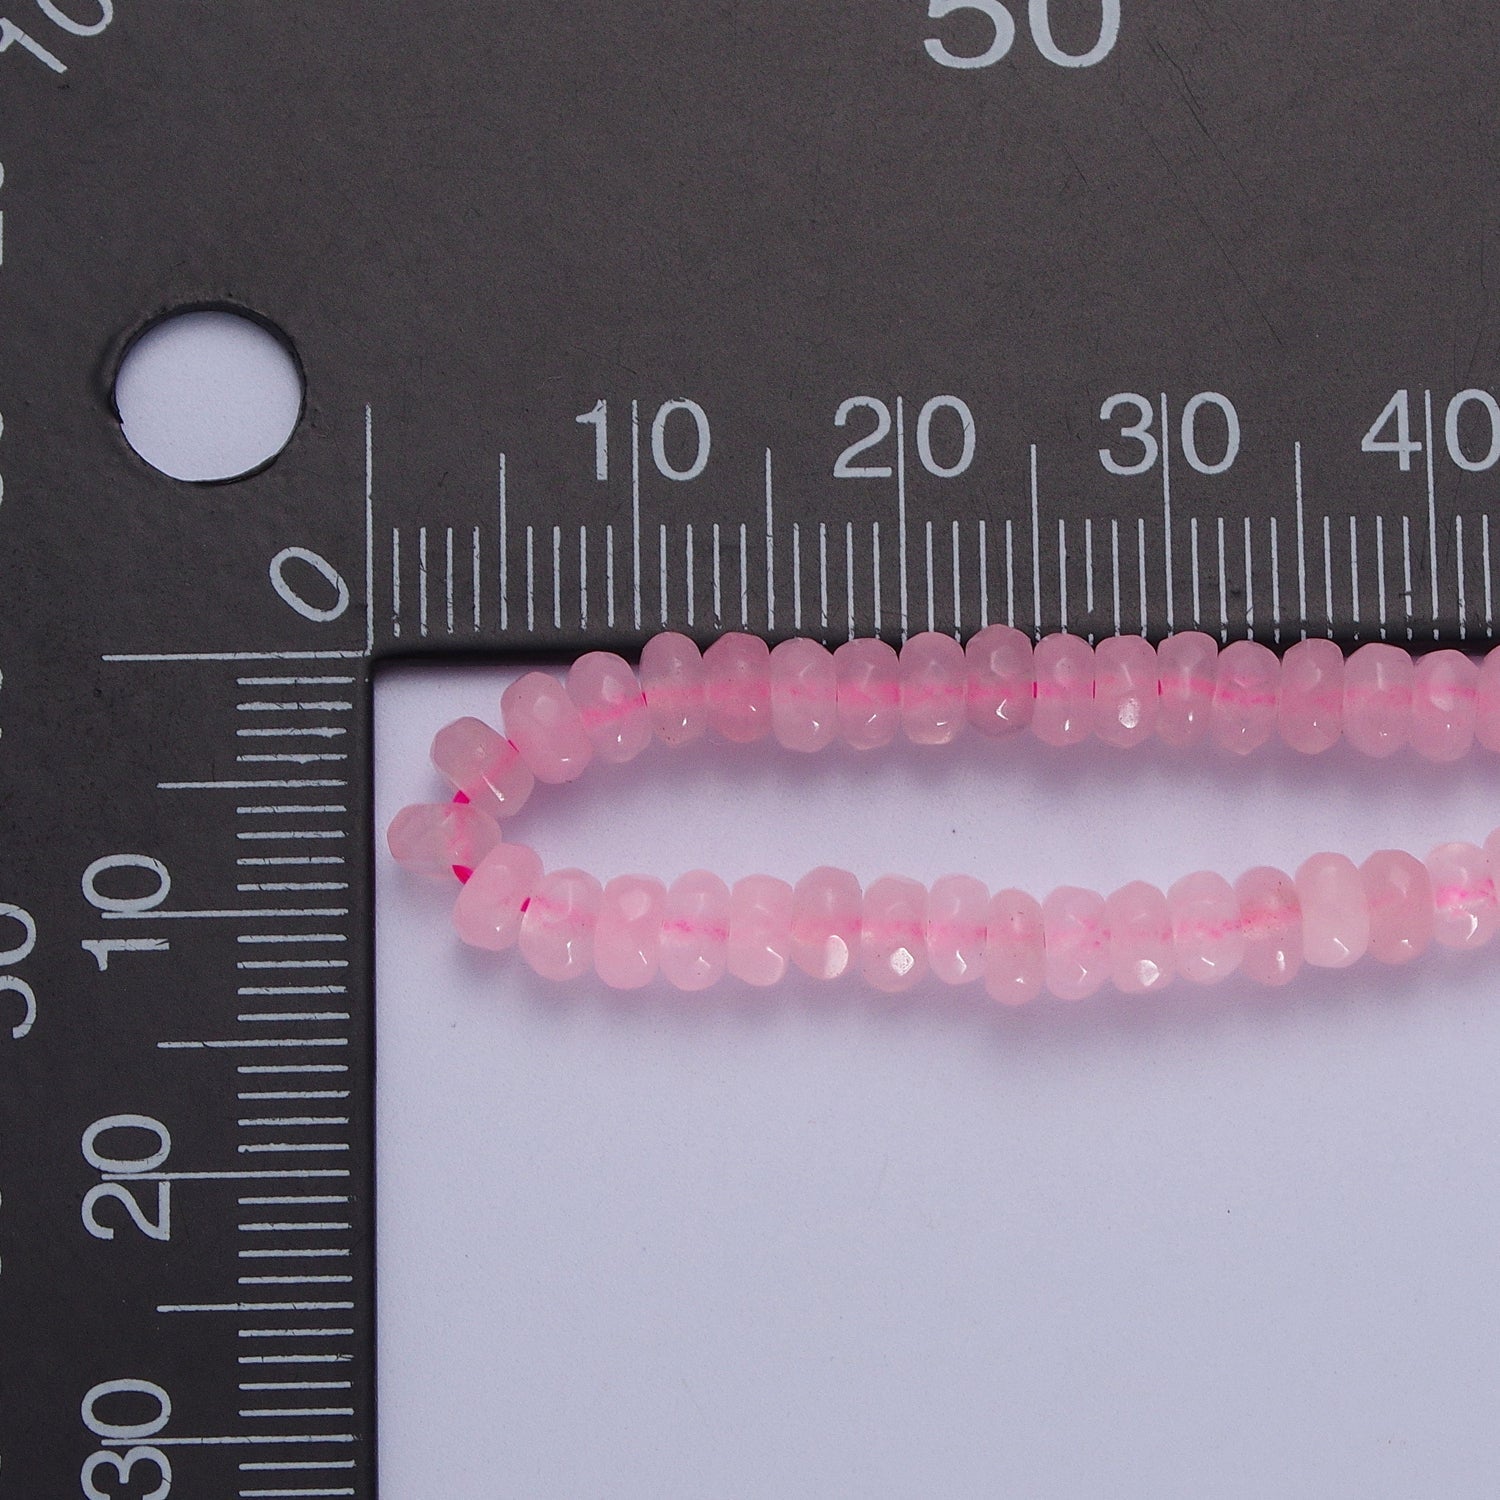 16 Inch Rhondelle 5mm Glass Beads Handmade Necklaces | WA-1438 ~ WA-1443, WA-1480 ~ WA-1485 - DLUXCA